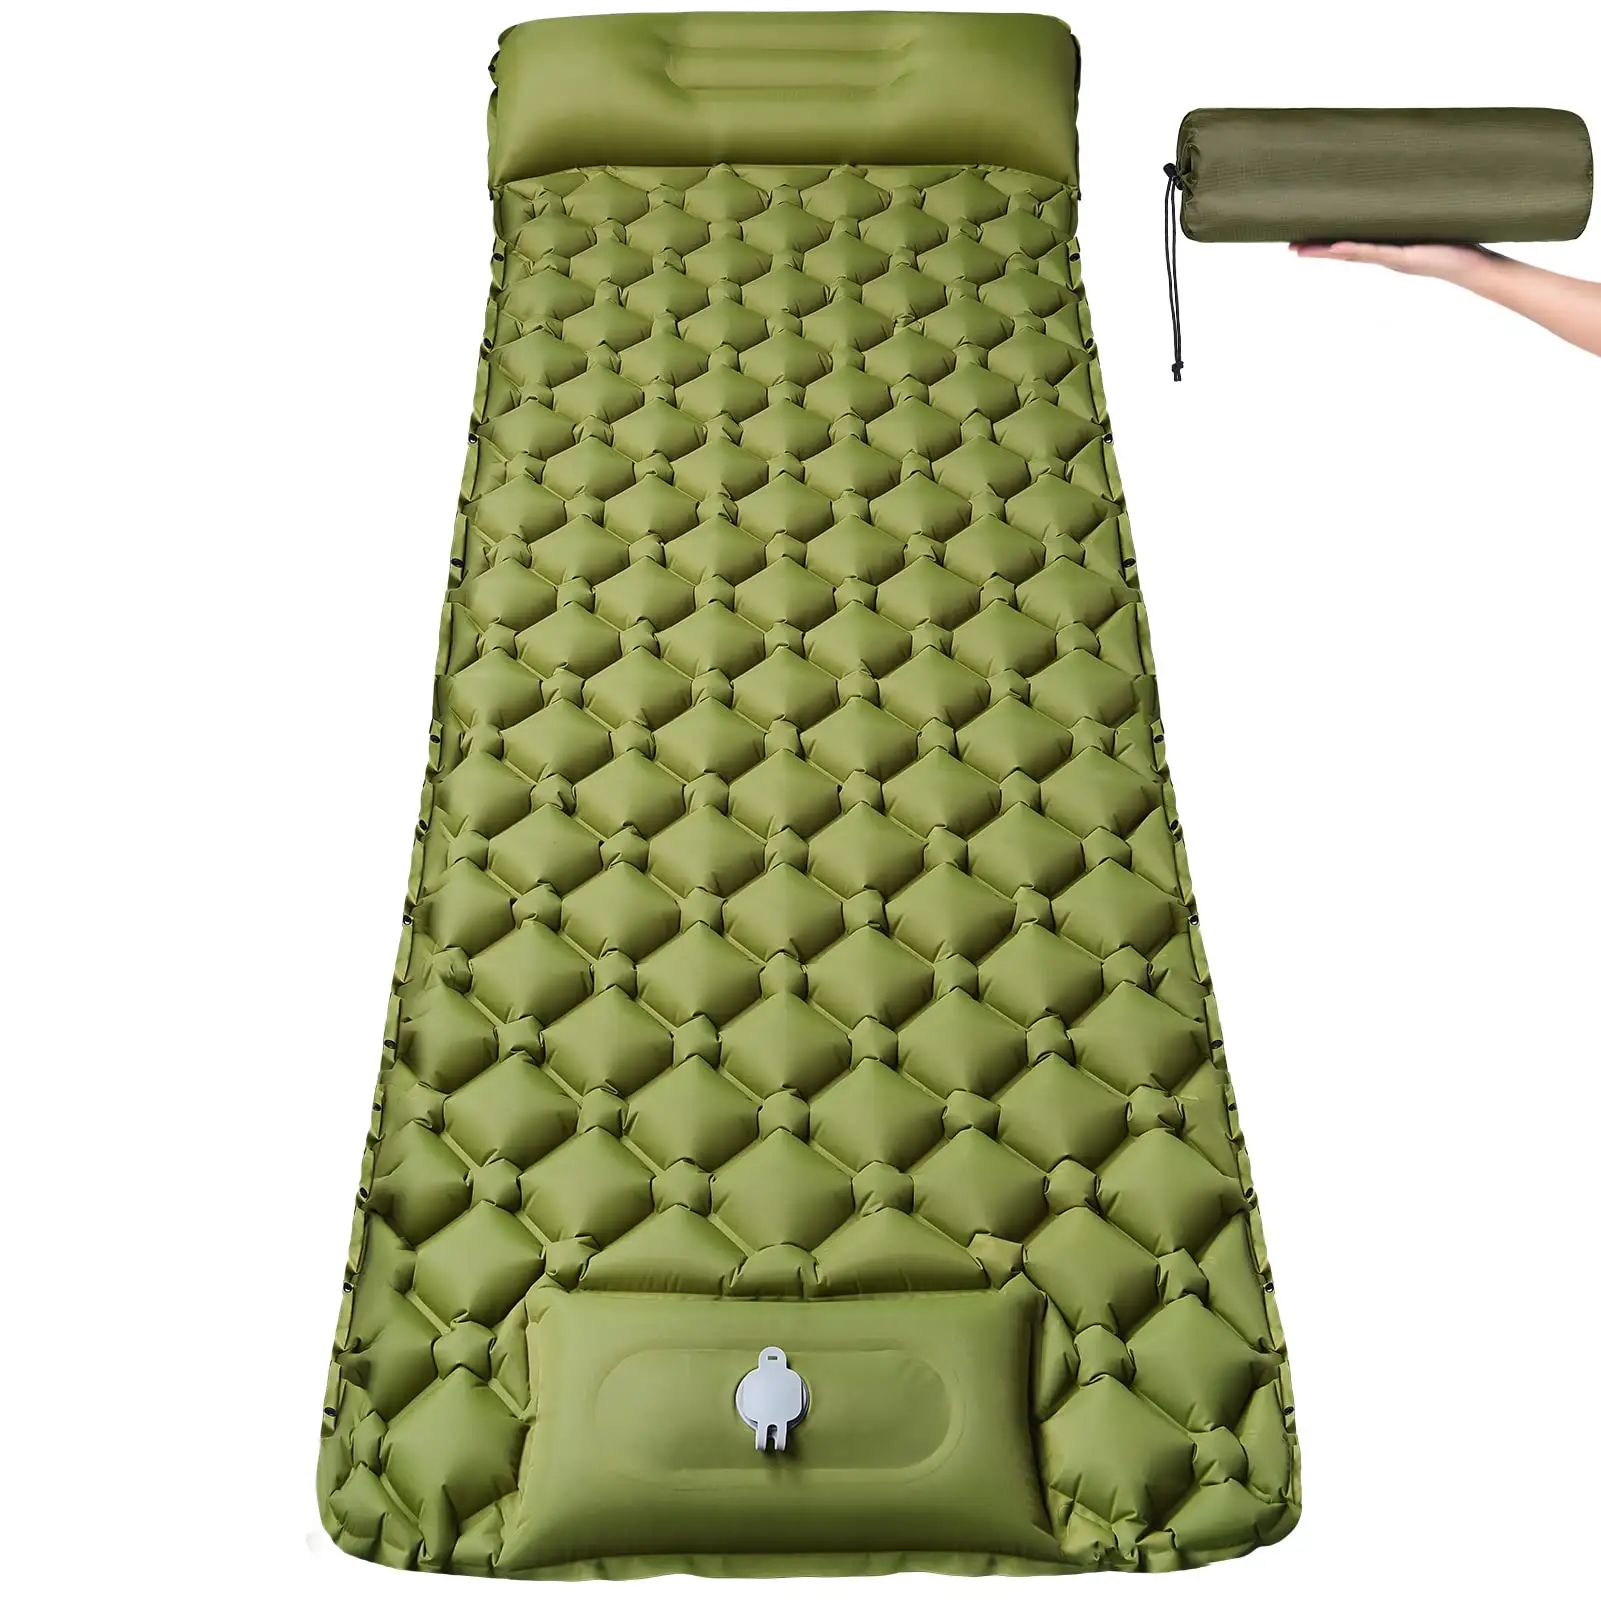 Ultraleichtes faltbares kompaktes selbst aufblasen des Reise auto Camping boden Picknick Nylon Aufblasbare Bett matten & Schlaf polster